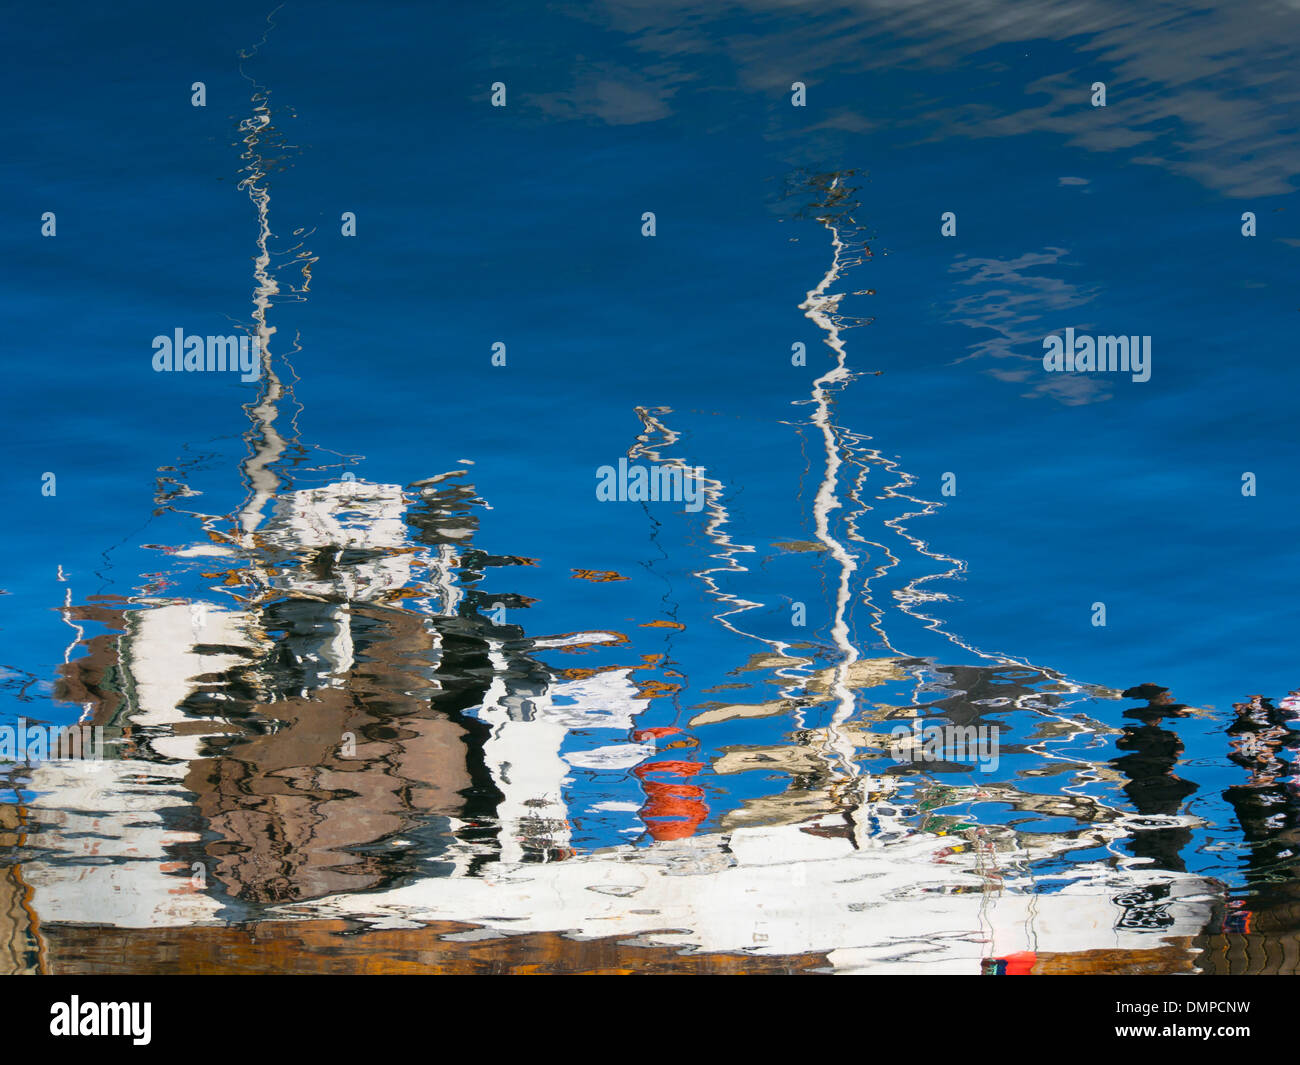 La réflexion d'un bateau de pêche dans un cadre calme, bleu fjord d'été en Norvège Banque D'Images